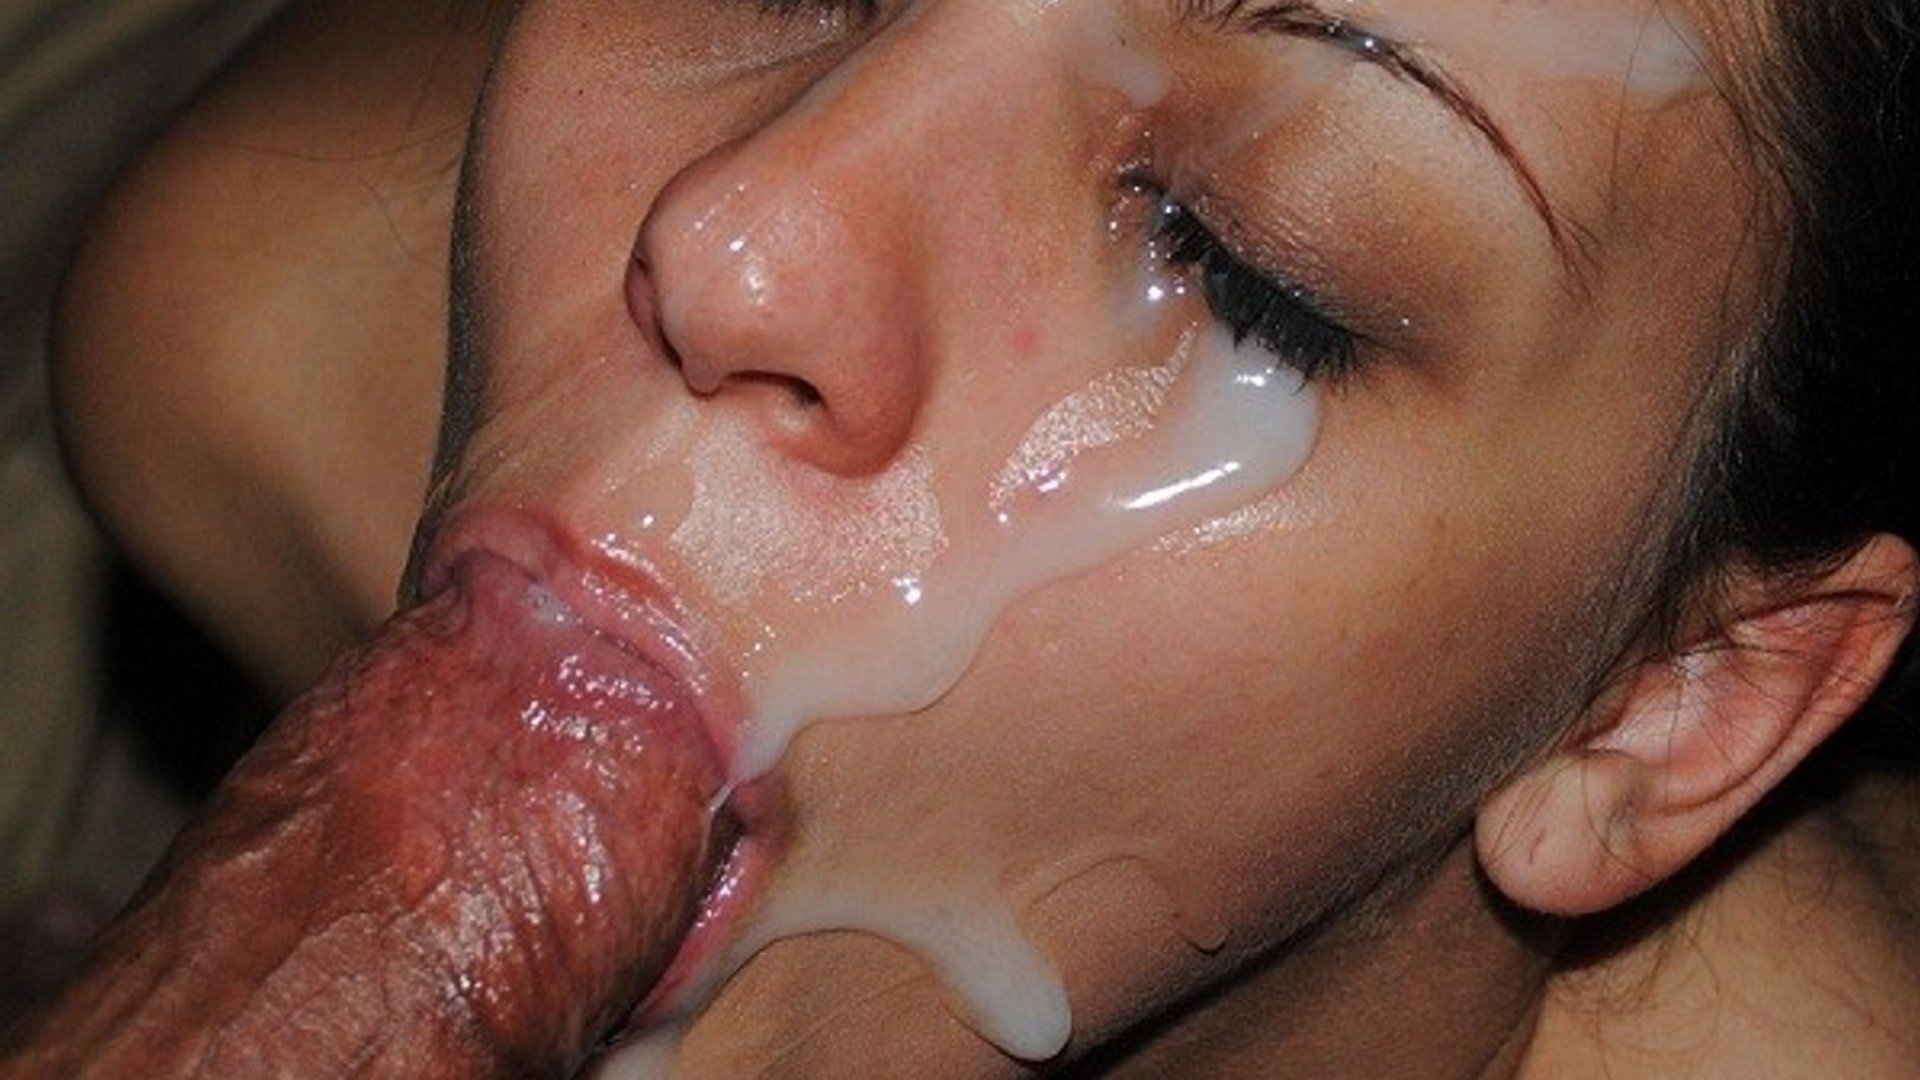 Fellatio Sperm - Blowjob sperm from mouth (50 photos) - porn photo